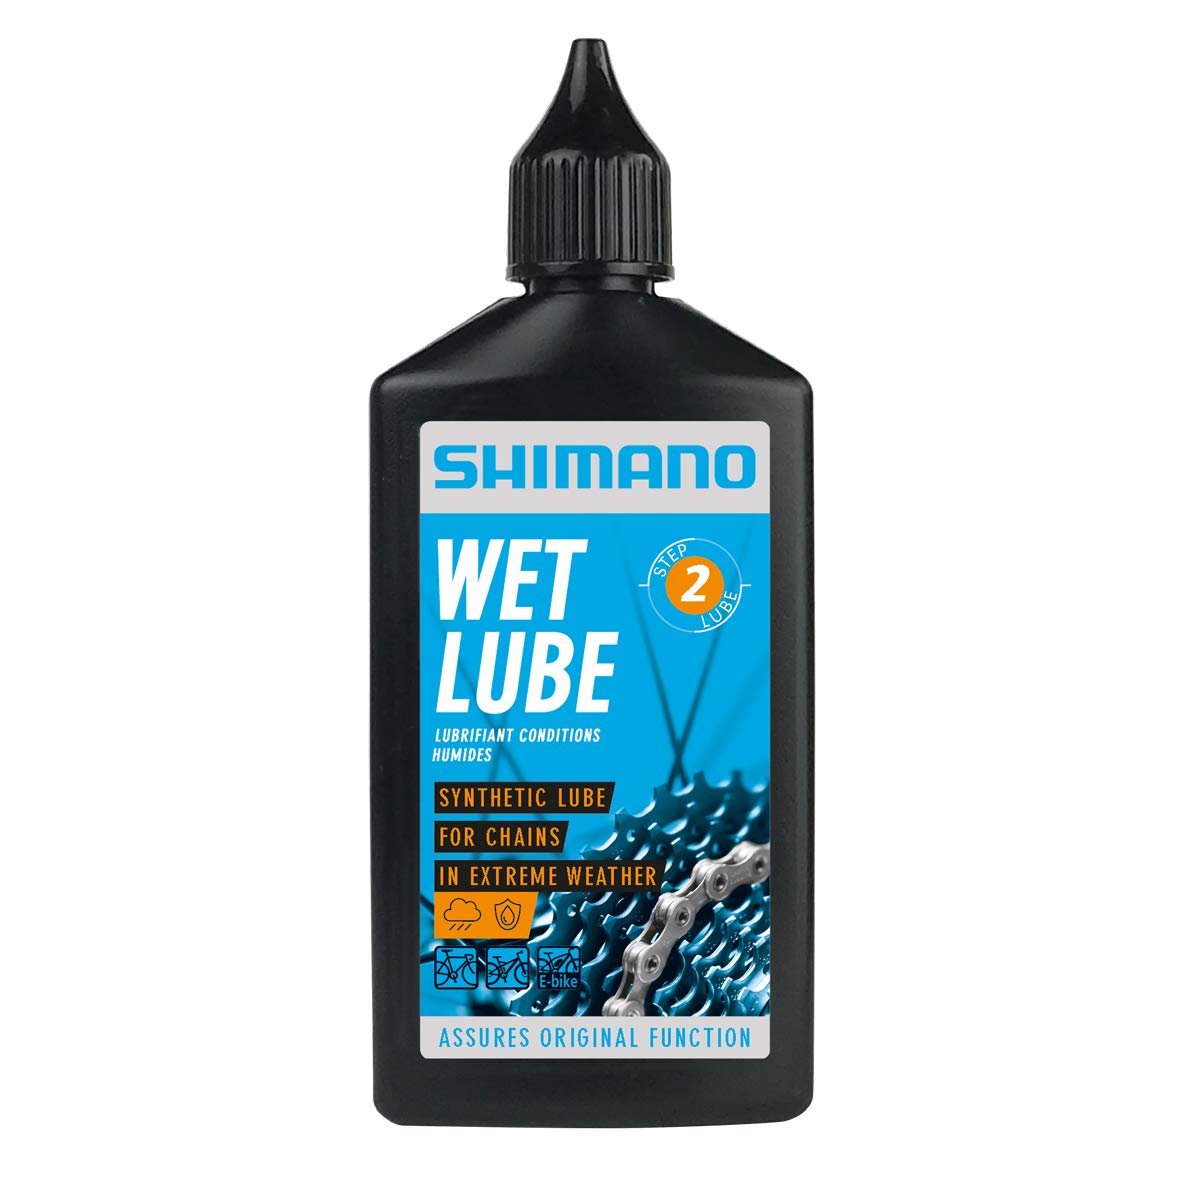 Смазка Shimano Wet Lube, для цепи, для влажной погоды, флакон, 100 мл, LBWL1B0100SA